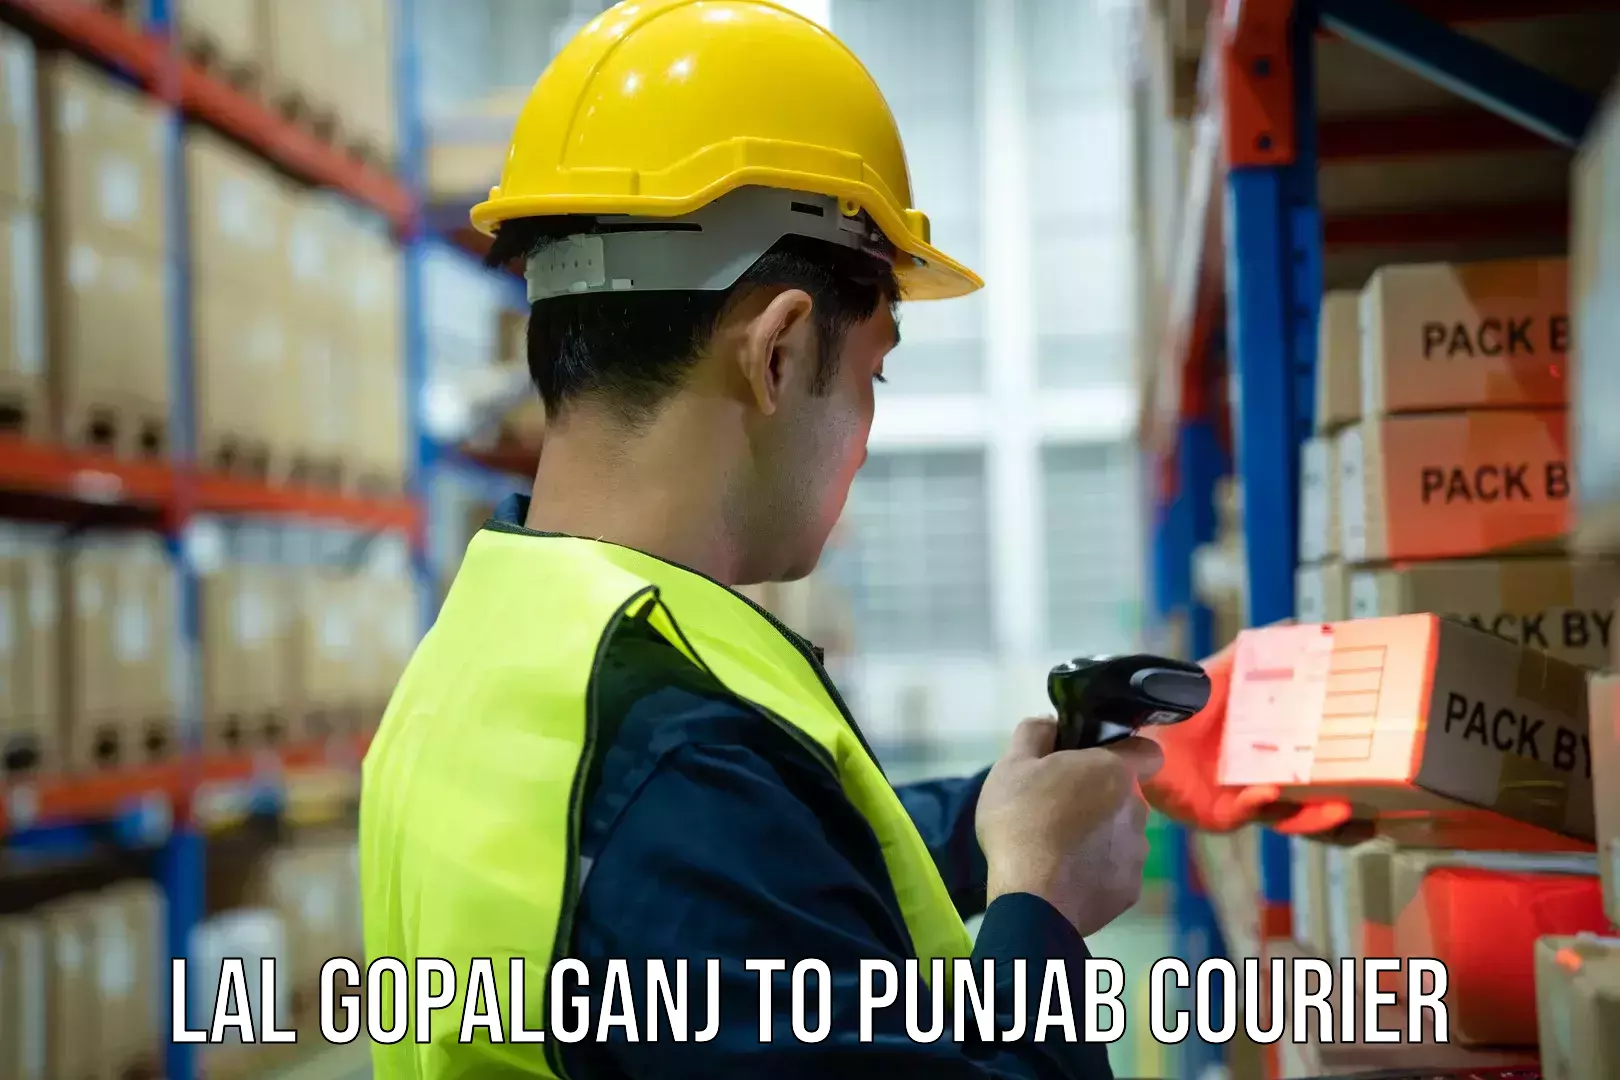 24/7 shipping services Lal Gopalganj to Punjab